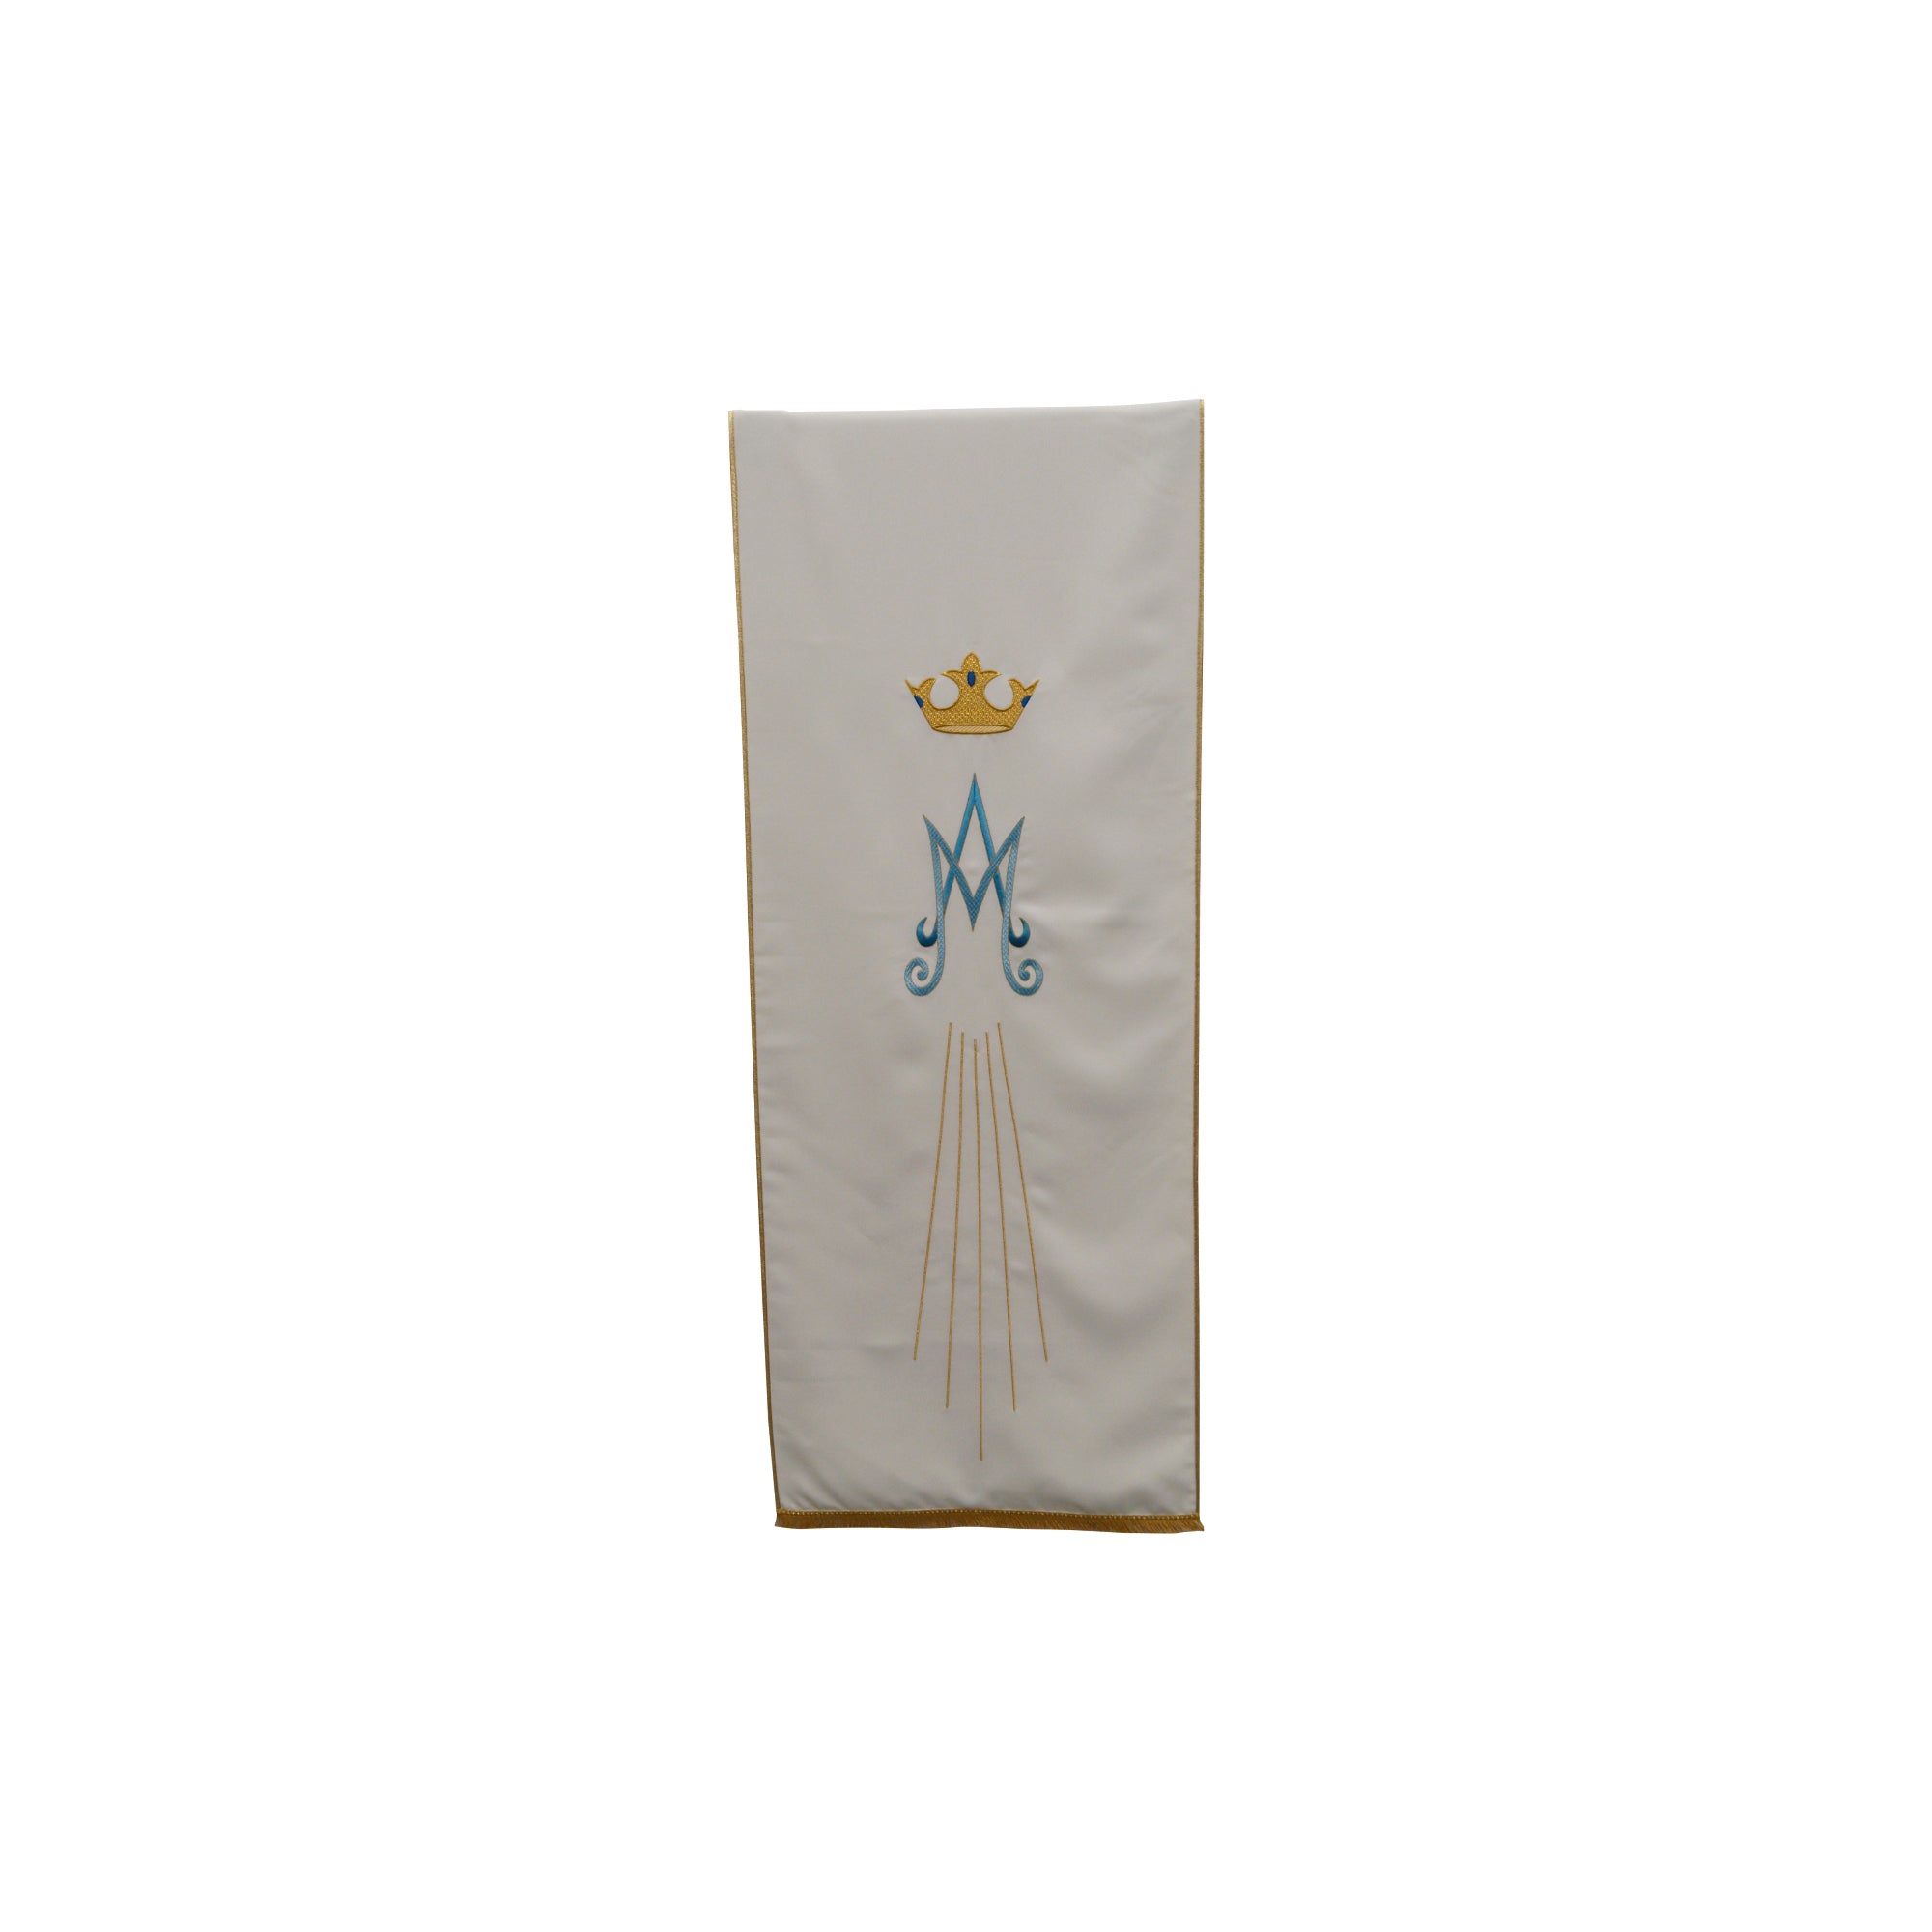 Coprileggio Liturgico bianco mariano economico con monogramma raggi e corona in poliestere